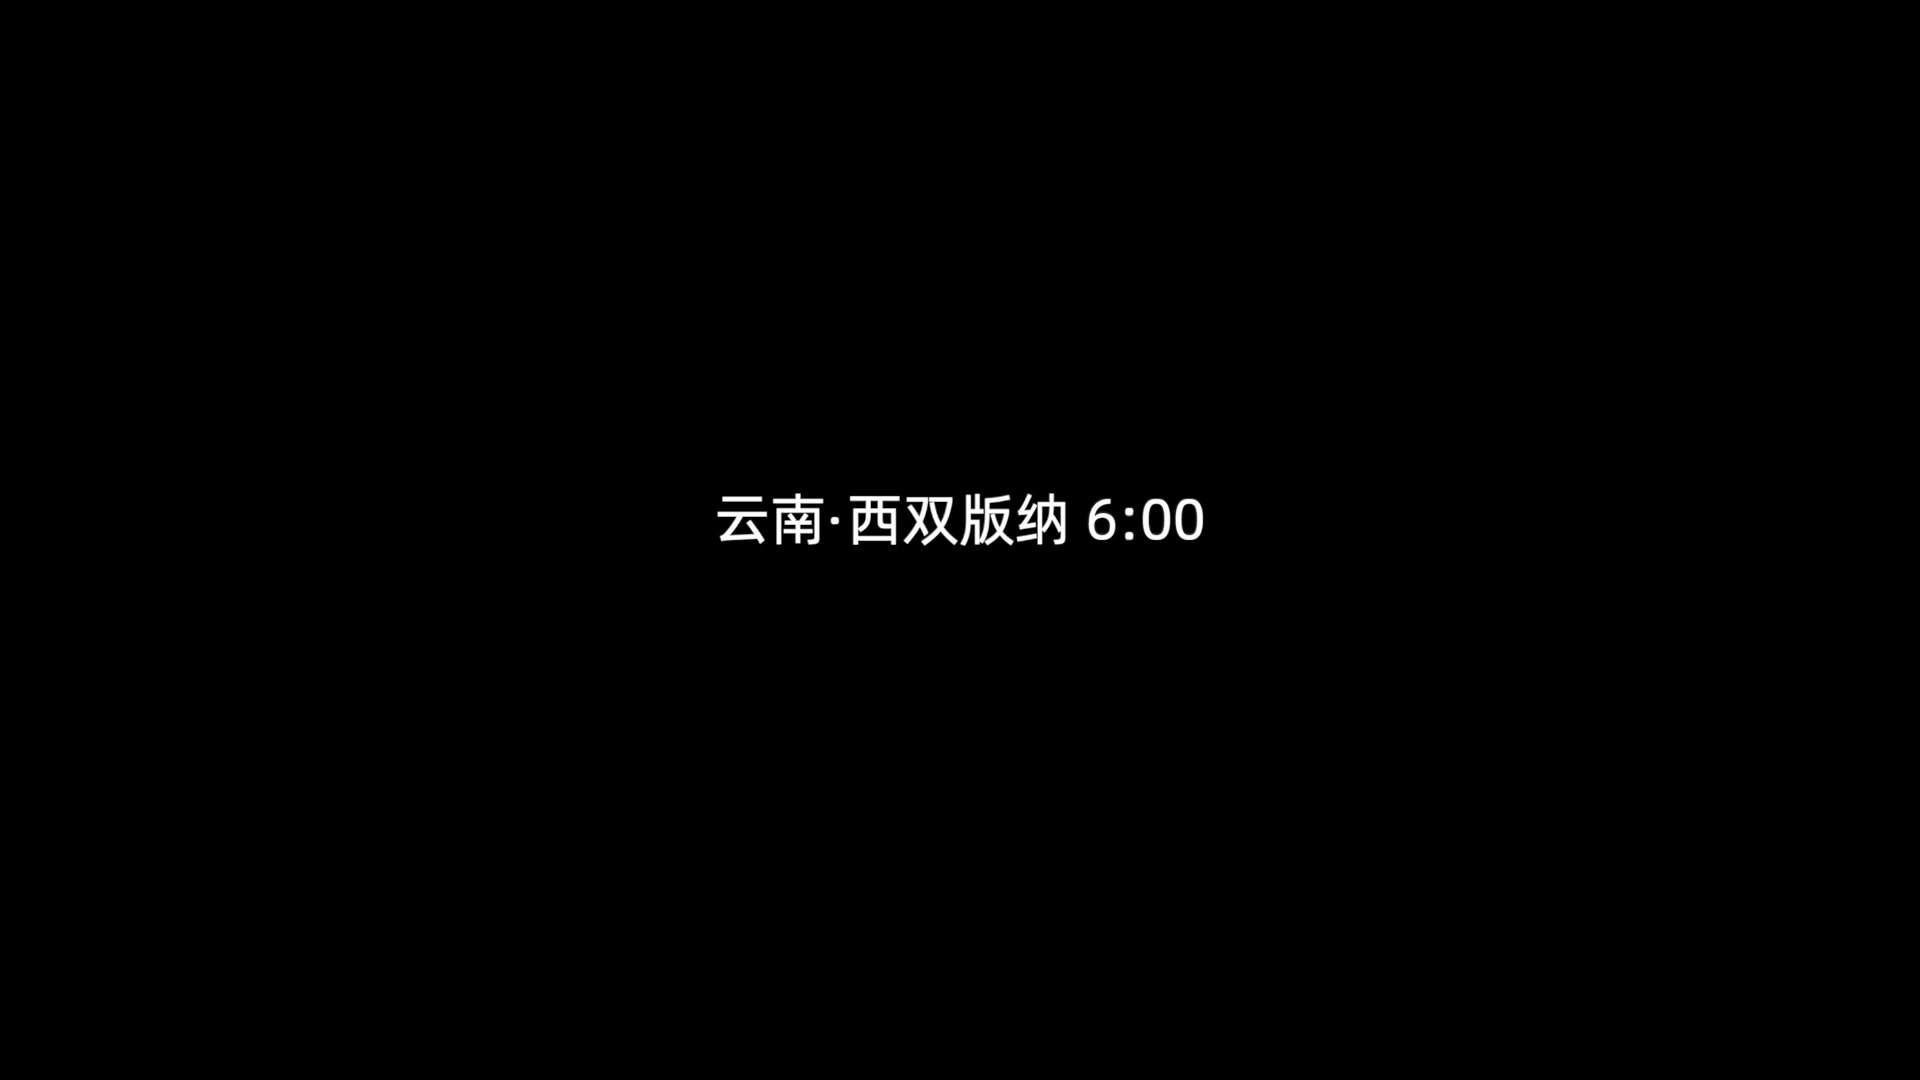 《幕后》西双版纳4A景区 热带花卉园宣传片